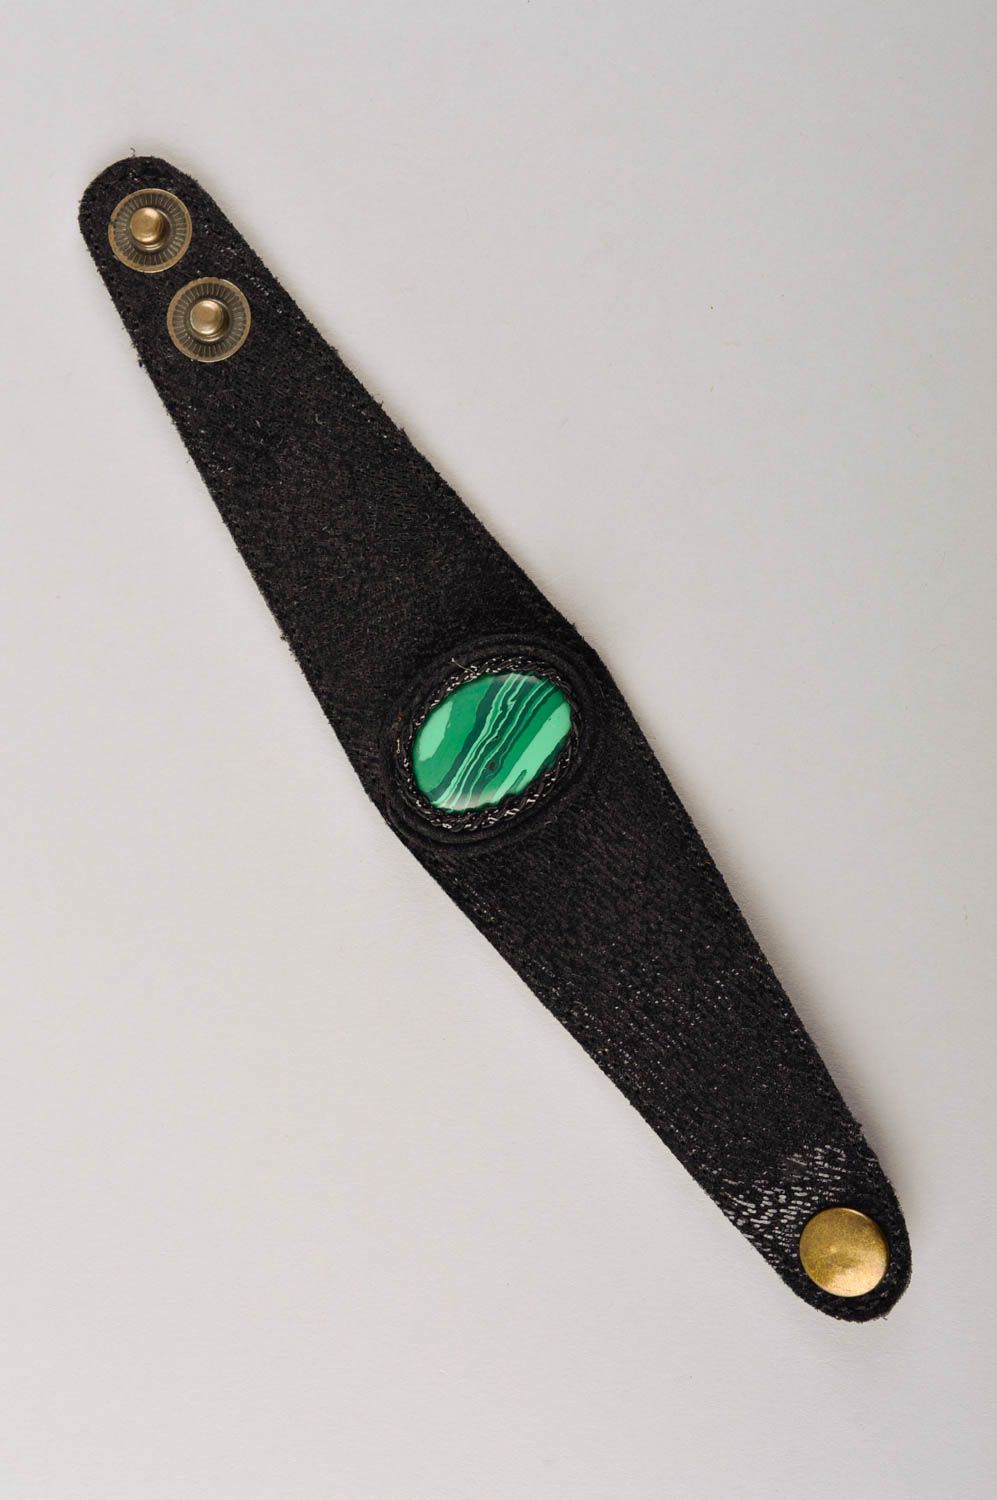 Stylish handmade leather bracelet wrist bracelet designs fashion tips gift ideas photo 5